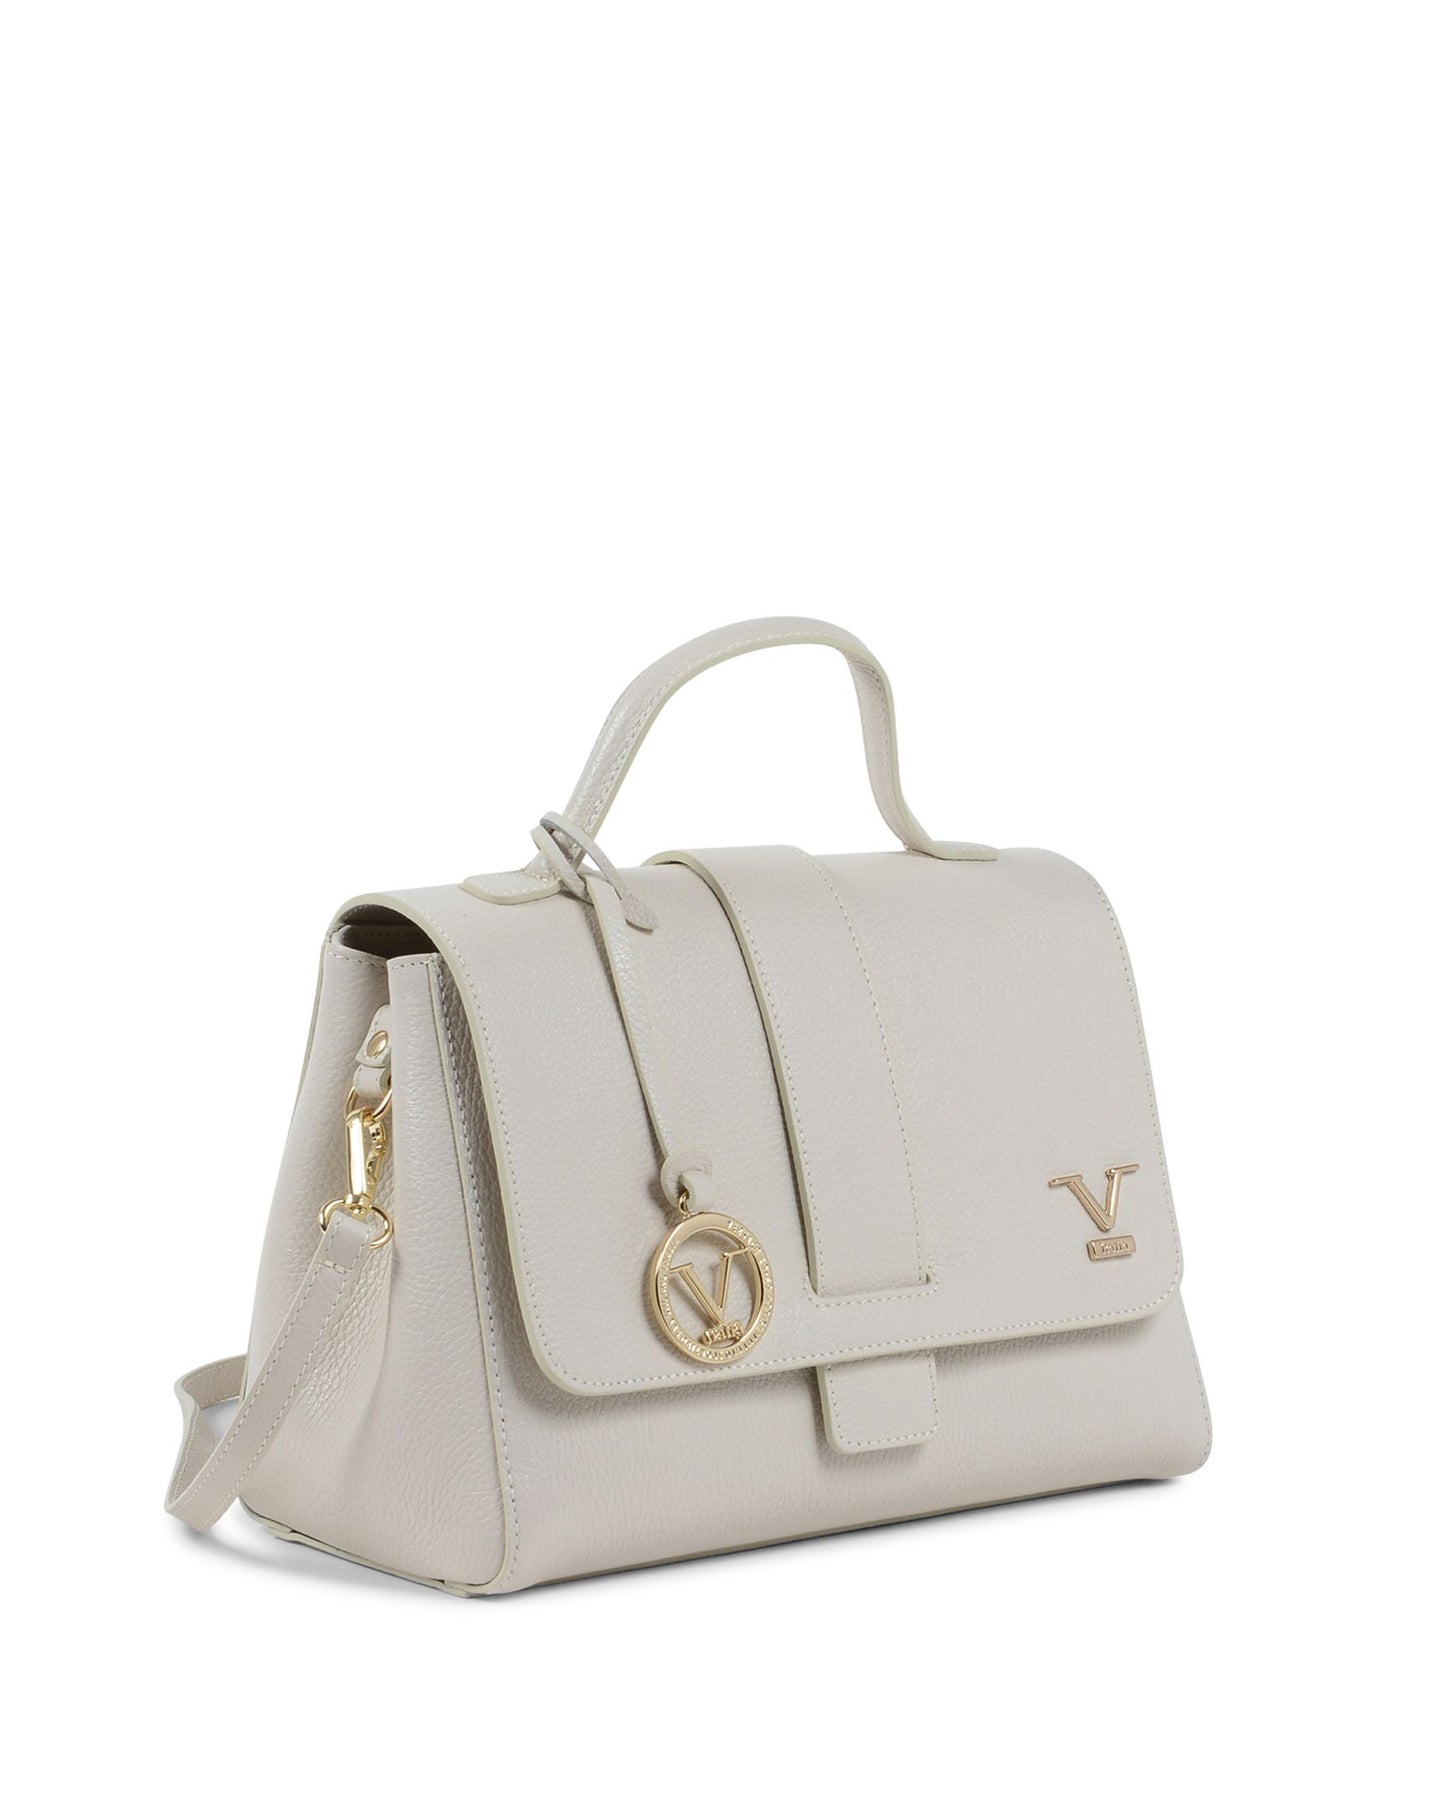 V Italia Womens Handbag White BC10280 52 DOLLARO LATTE